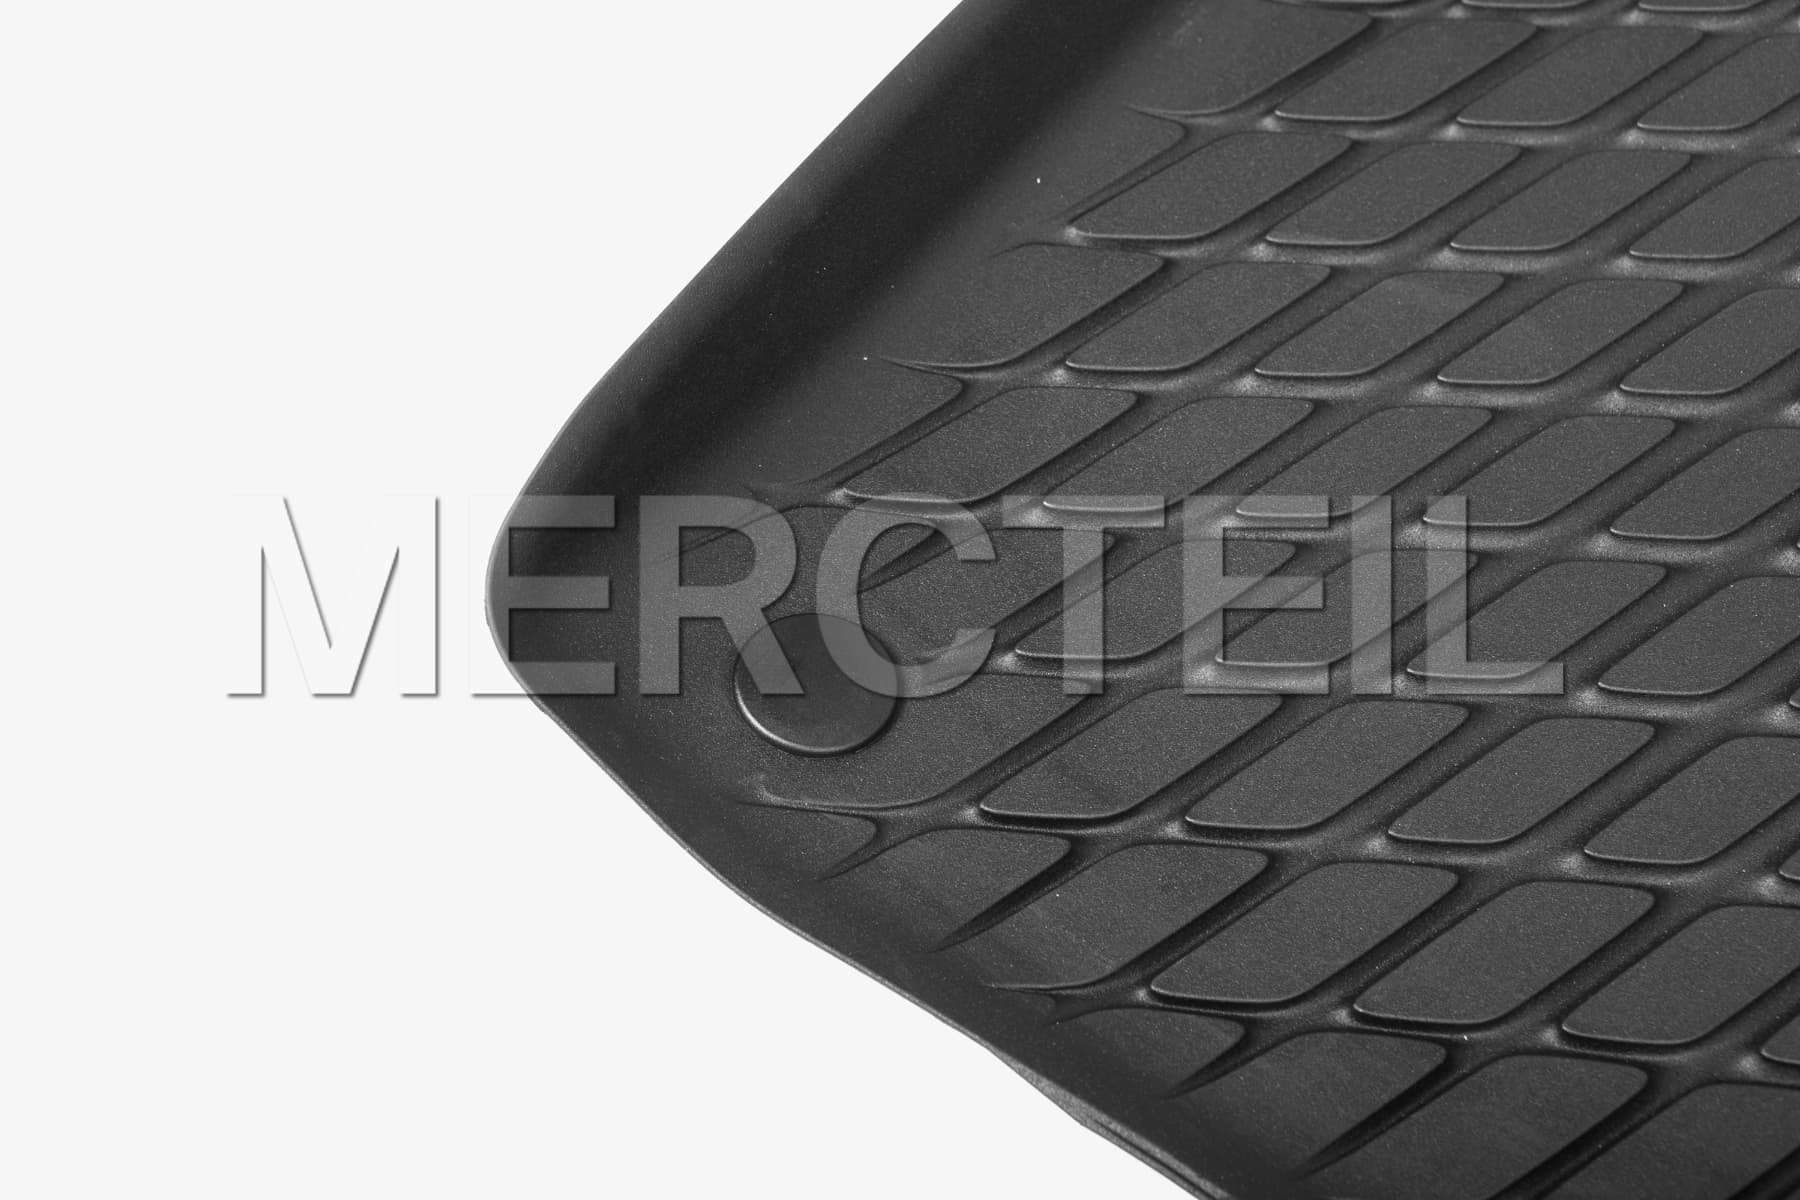 Echtes Mercedes-Benz Ganzjahres-Gummimatten-Set für den vorderen Fußraum (Teilenummer: A17768032049051)